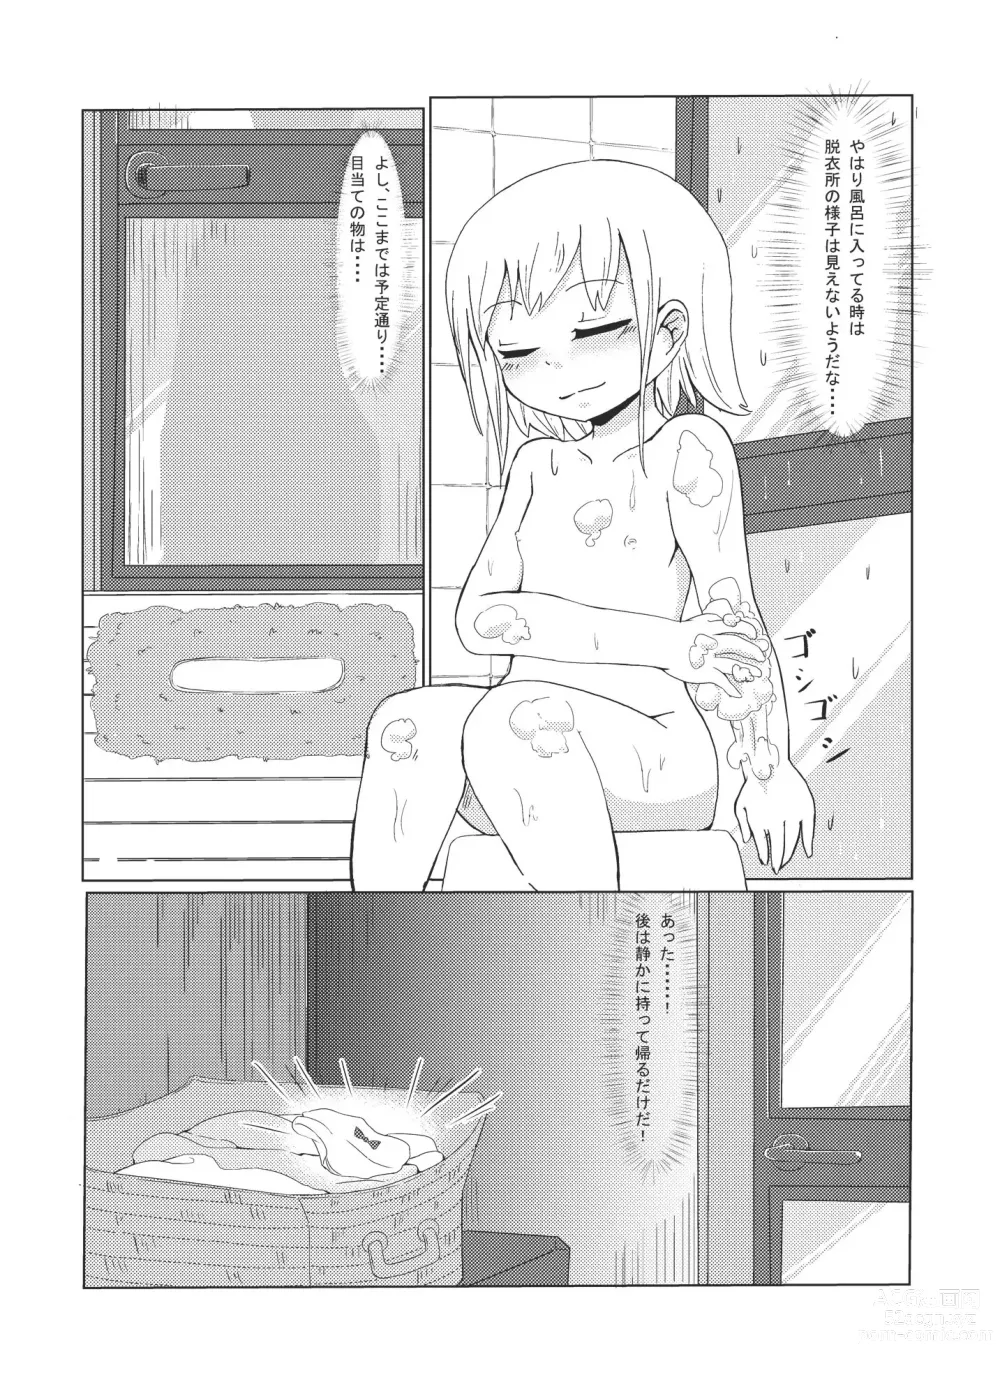 Page 3 of doujinshi Imouto no ○○!